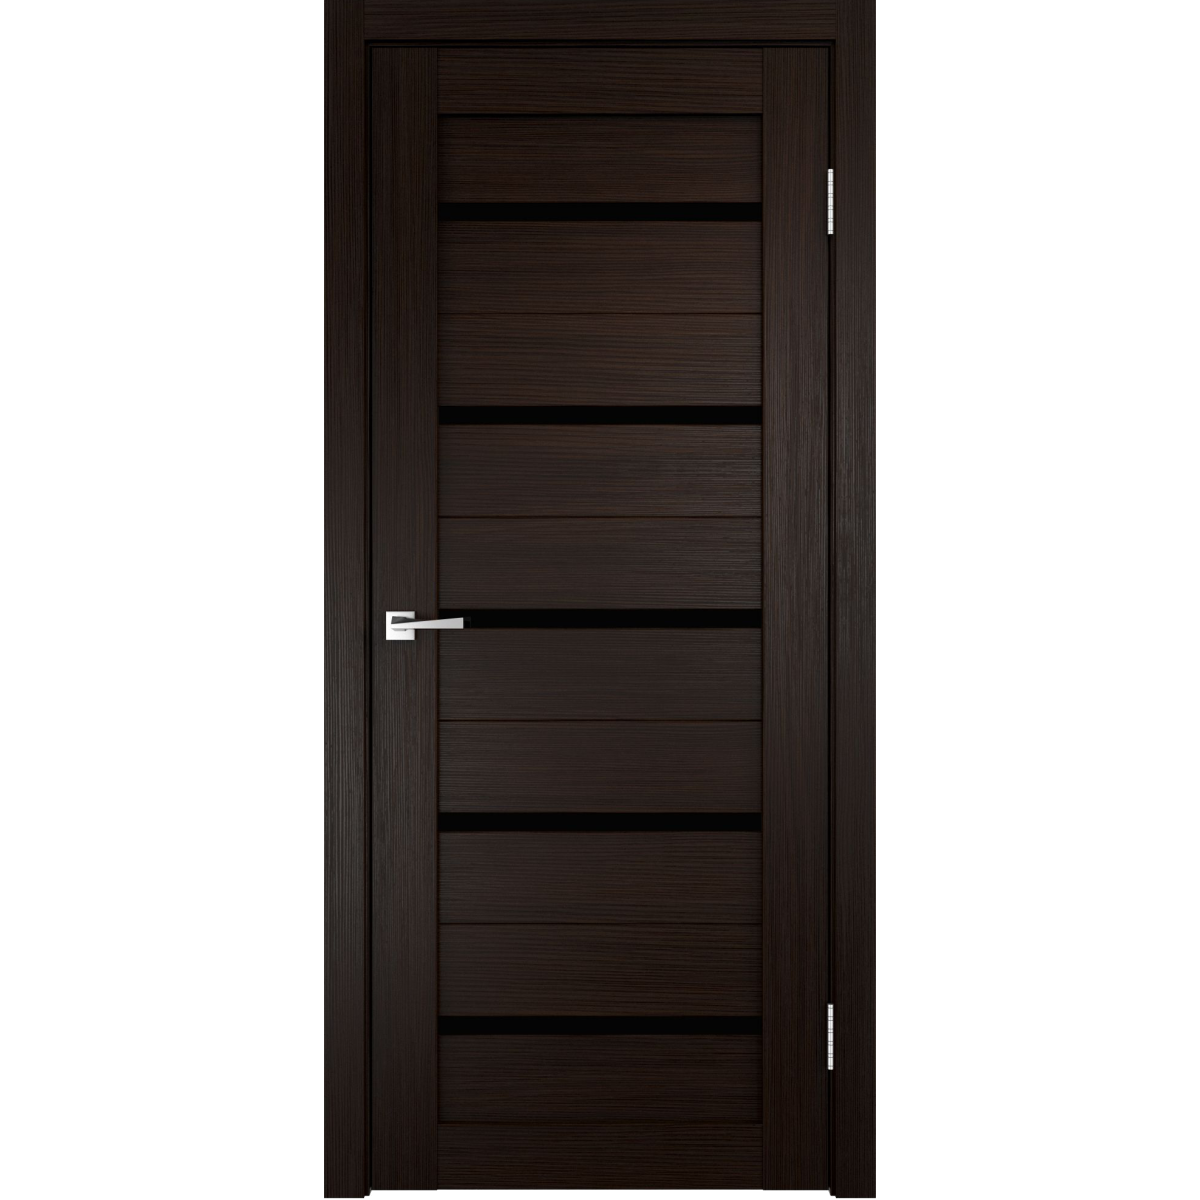 Дверь межкомнатная остеклённая Дюплекс/Фортуна 60x200 см, ПВХ, искусственный шпон, цвет венге